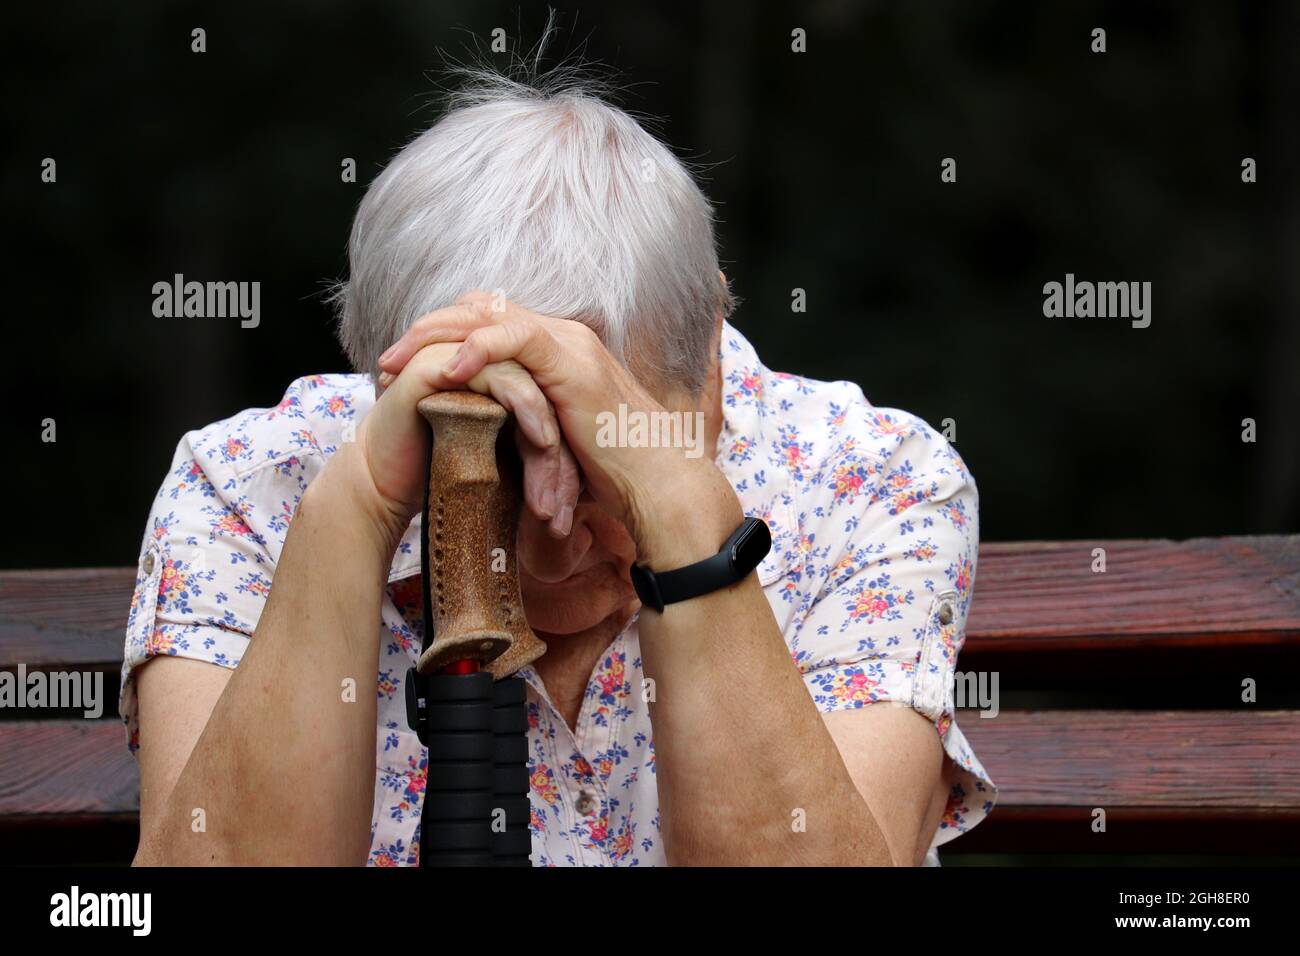 Ältere Frau, die mit dem Kopf nach unten auf Spazierstöcken auf einer Bank sitzt. Krankheit und Müdigkeit, gesunder Lebensstil im Alter, Leben im Ruhestand Stockfoto